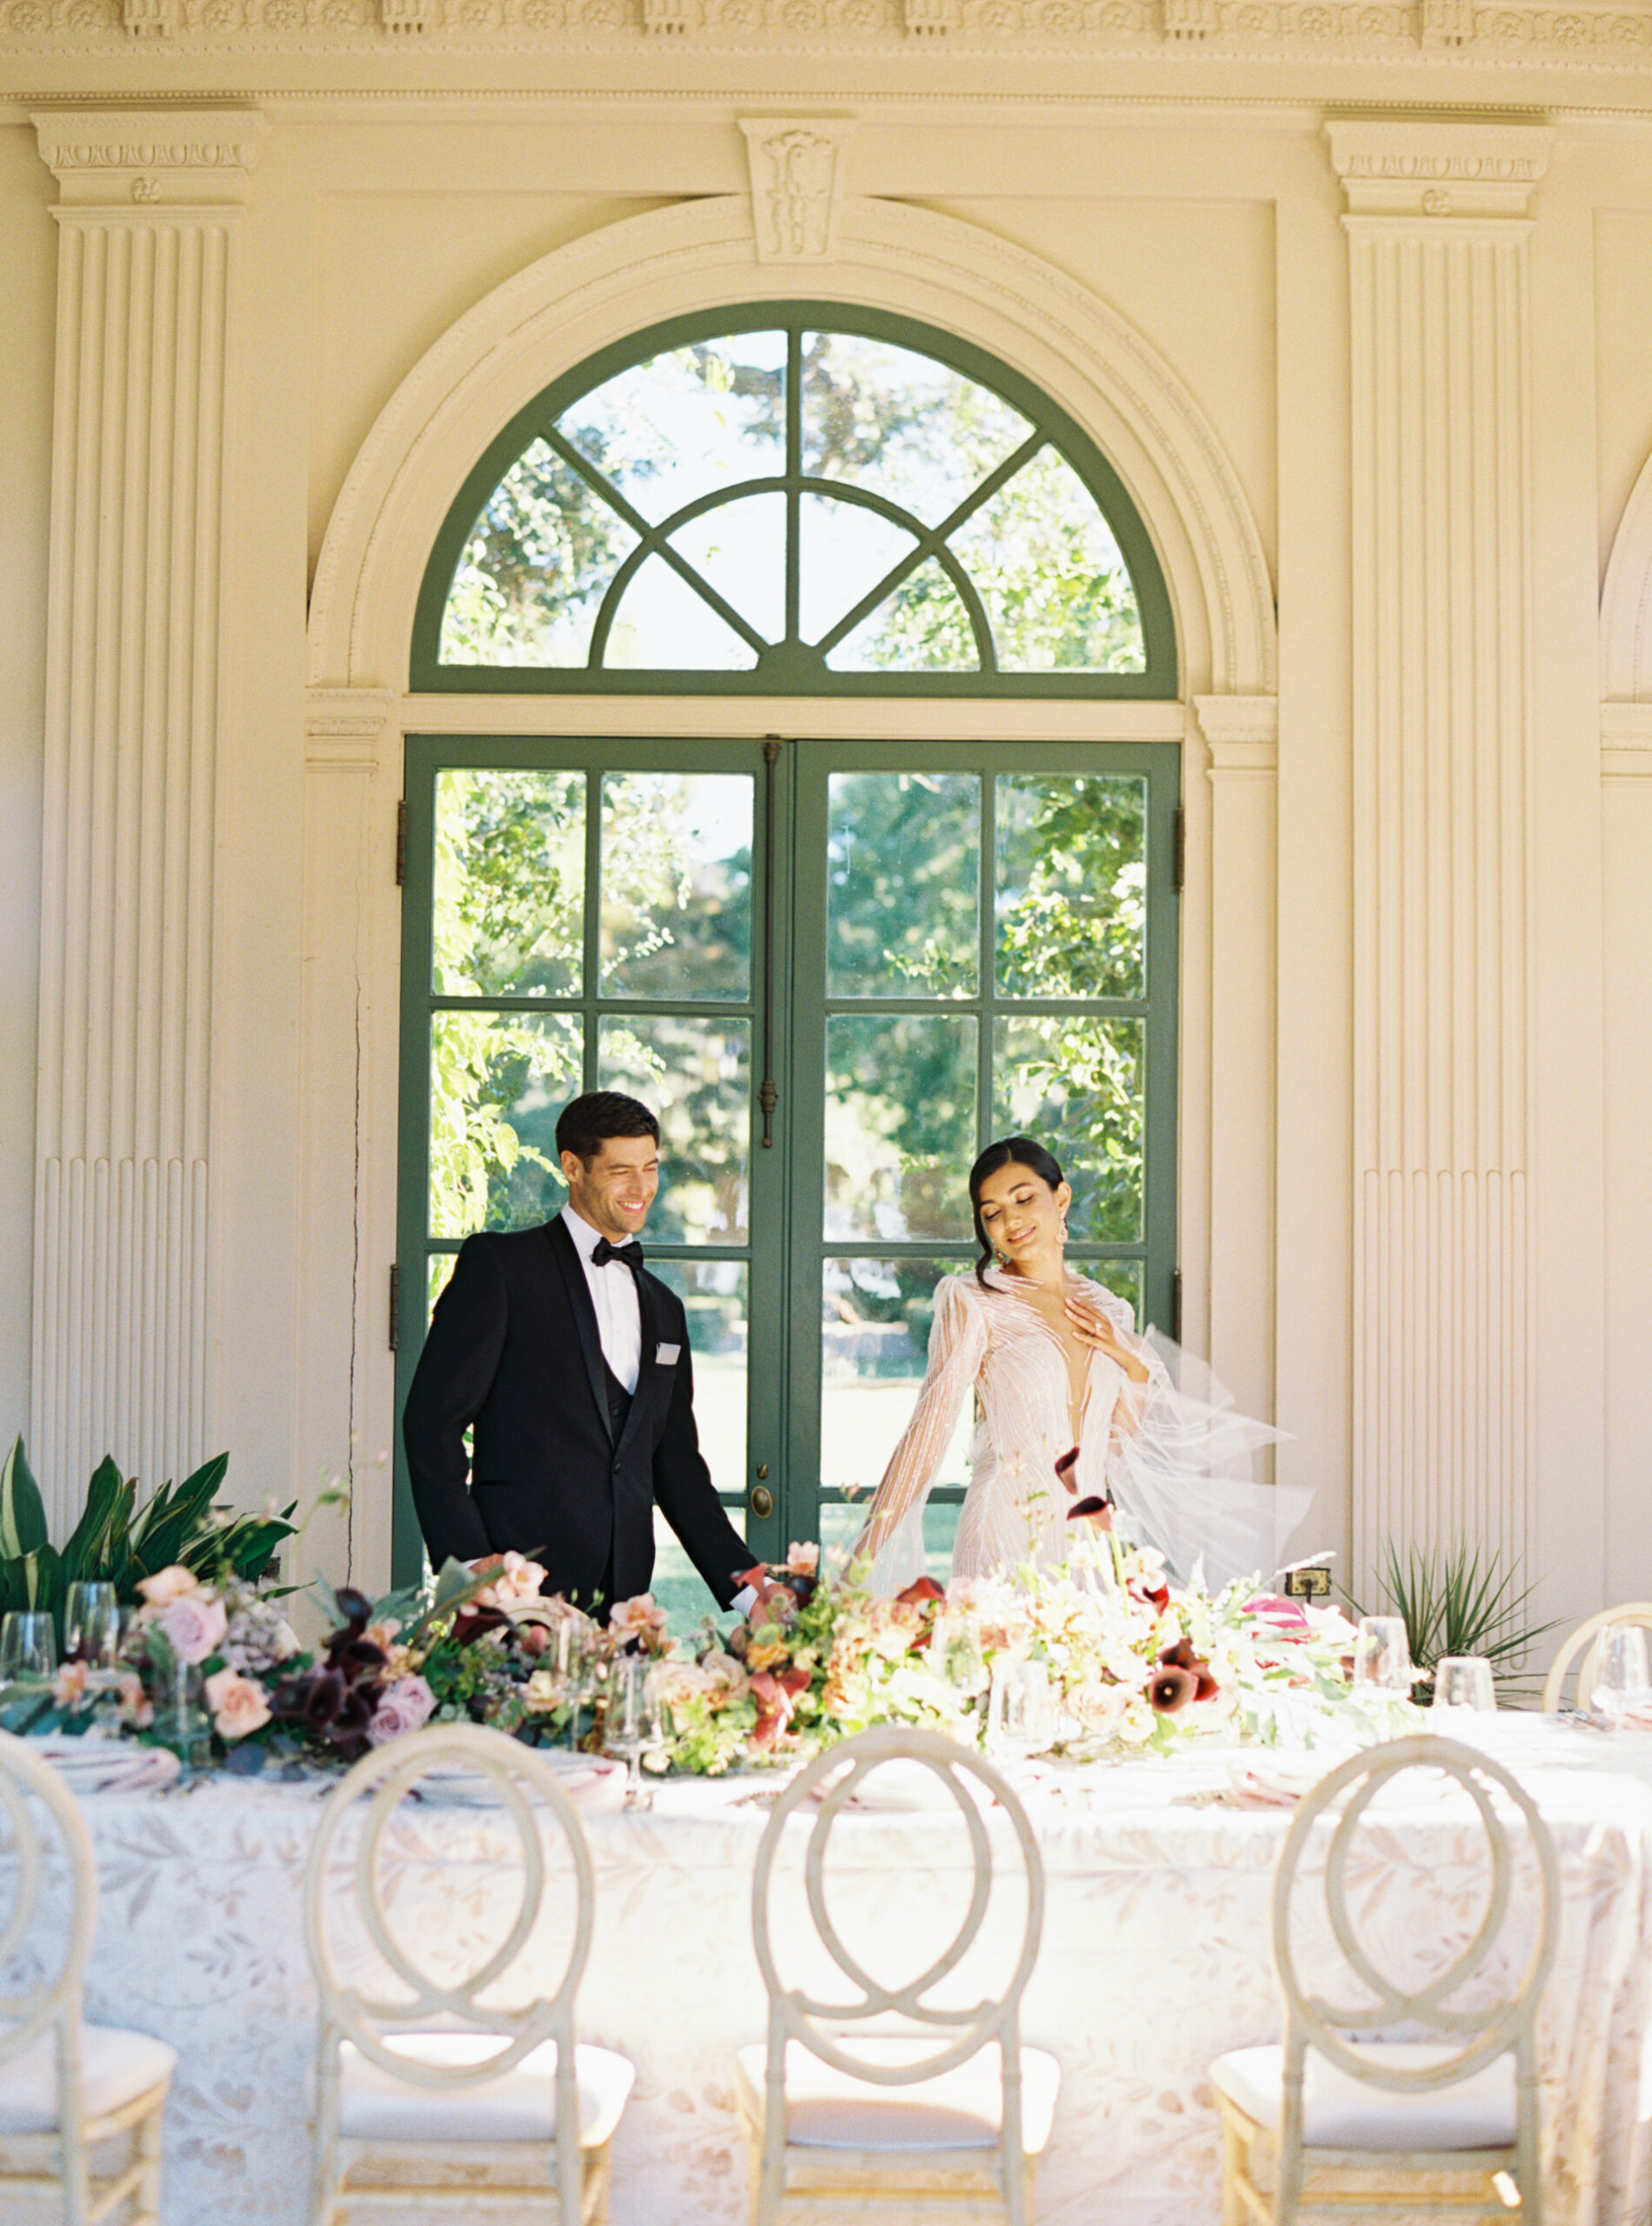 jp-liriano-photography-wedding-reception-room-reveal-filoli-garden-california-43